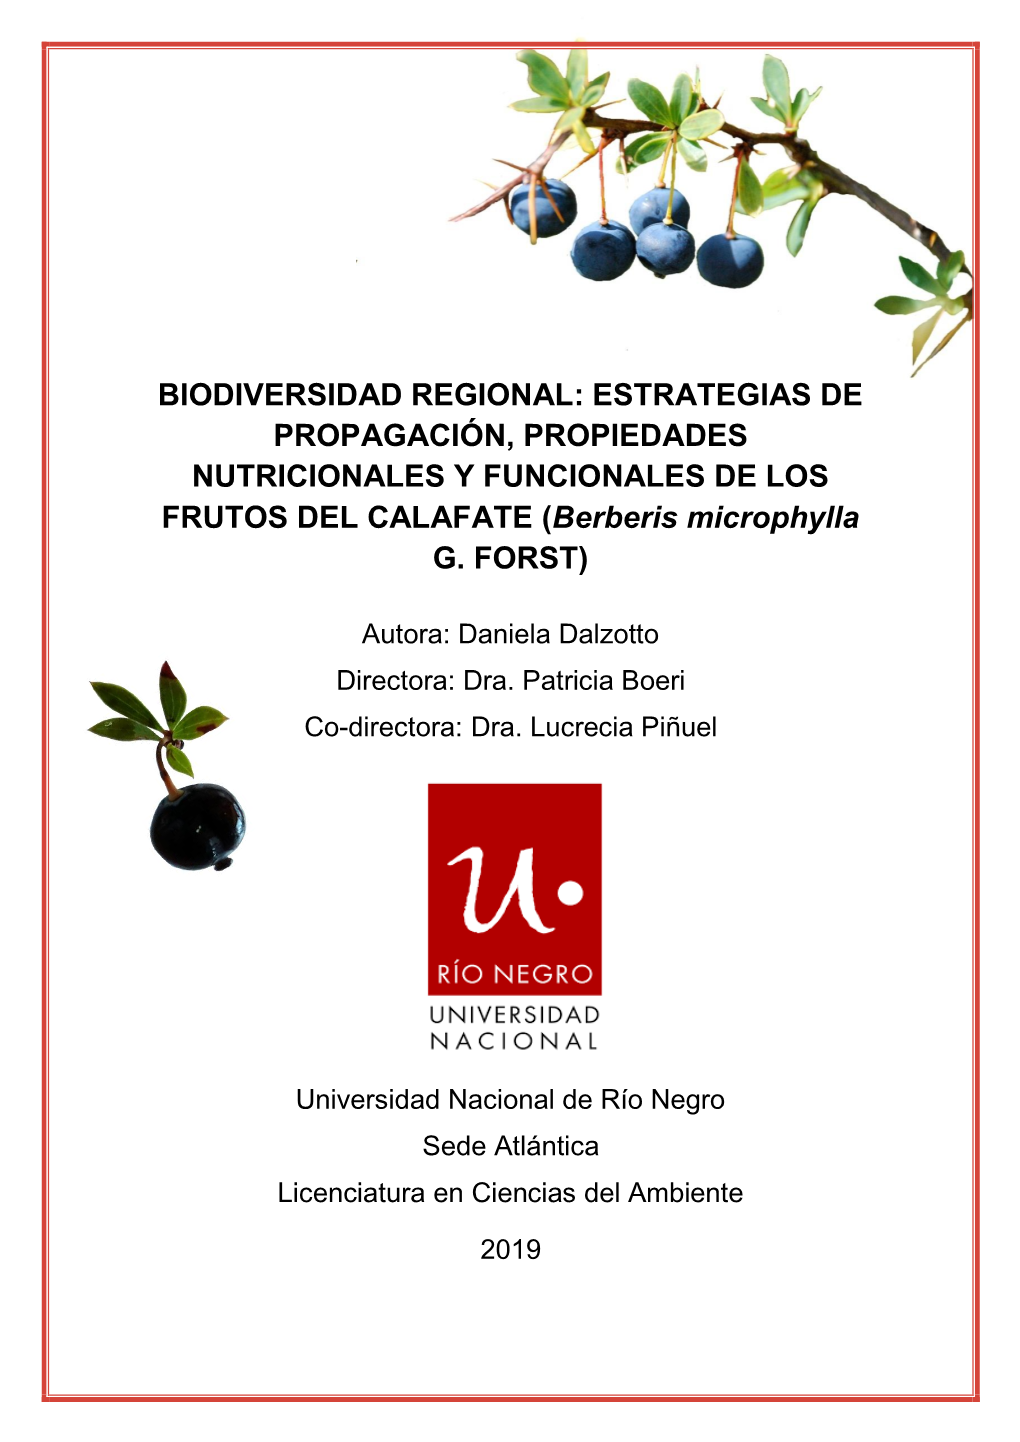 ESTRATEGIAS DE PROPAGACIÓN, PROPIEDADES NUTRICIONALES Y FUNCIONALES DE LOS FRUTOS DEL CALAFATE (Berberis Microphylla G